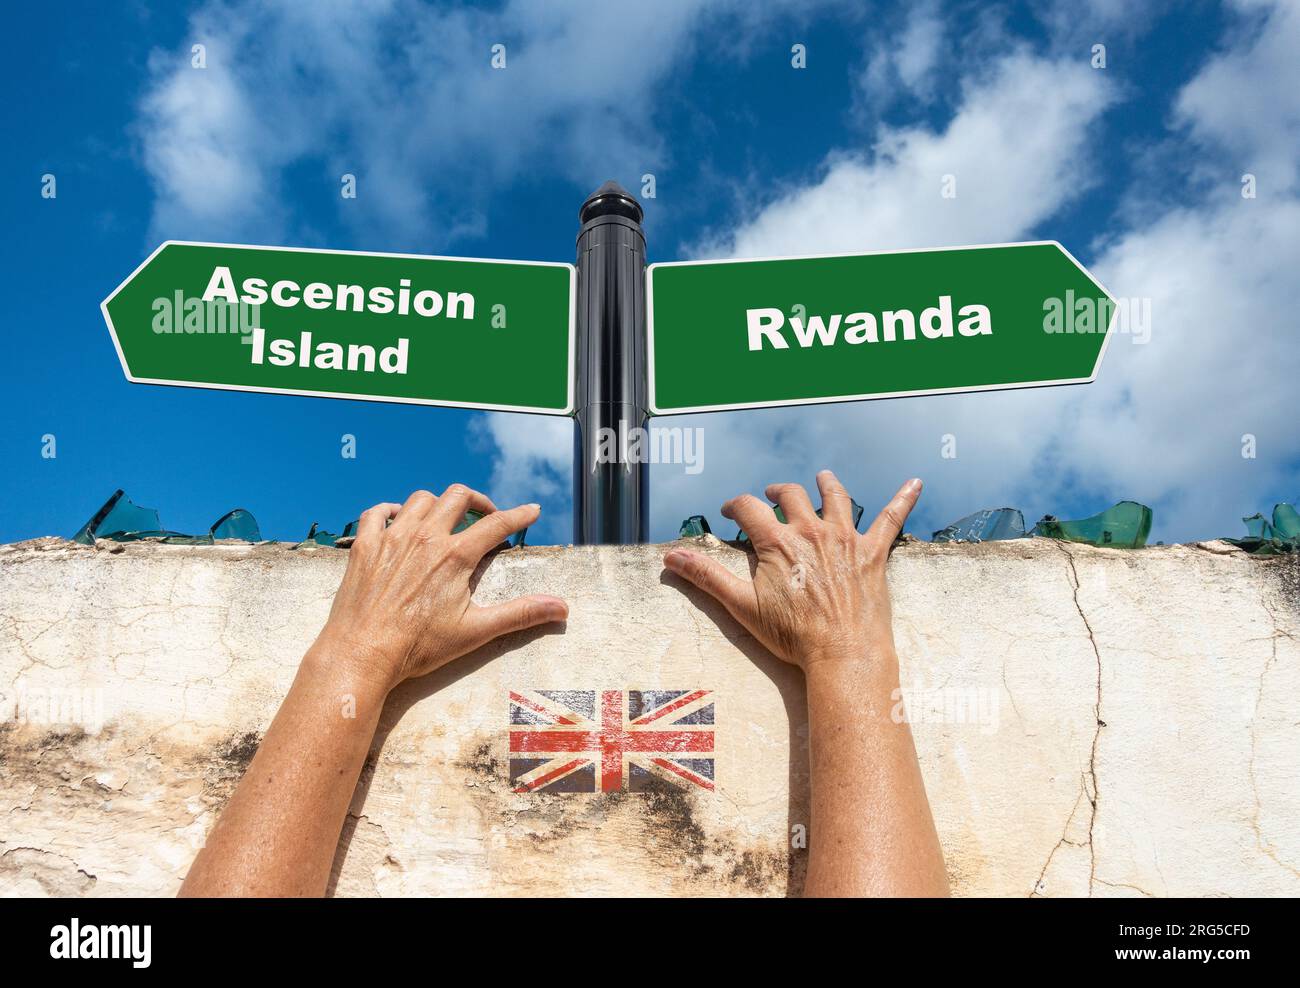 Ruanda, Konzept der Ascension Island. Britische Offshore-Asylverfahren, Neuansiedlung, Einwanderung, Migranten, Grenzkontrollen... Konzept Stockfoto